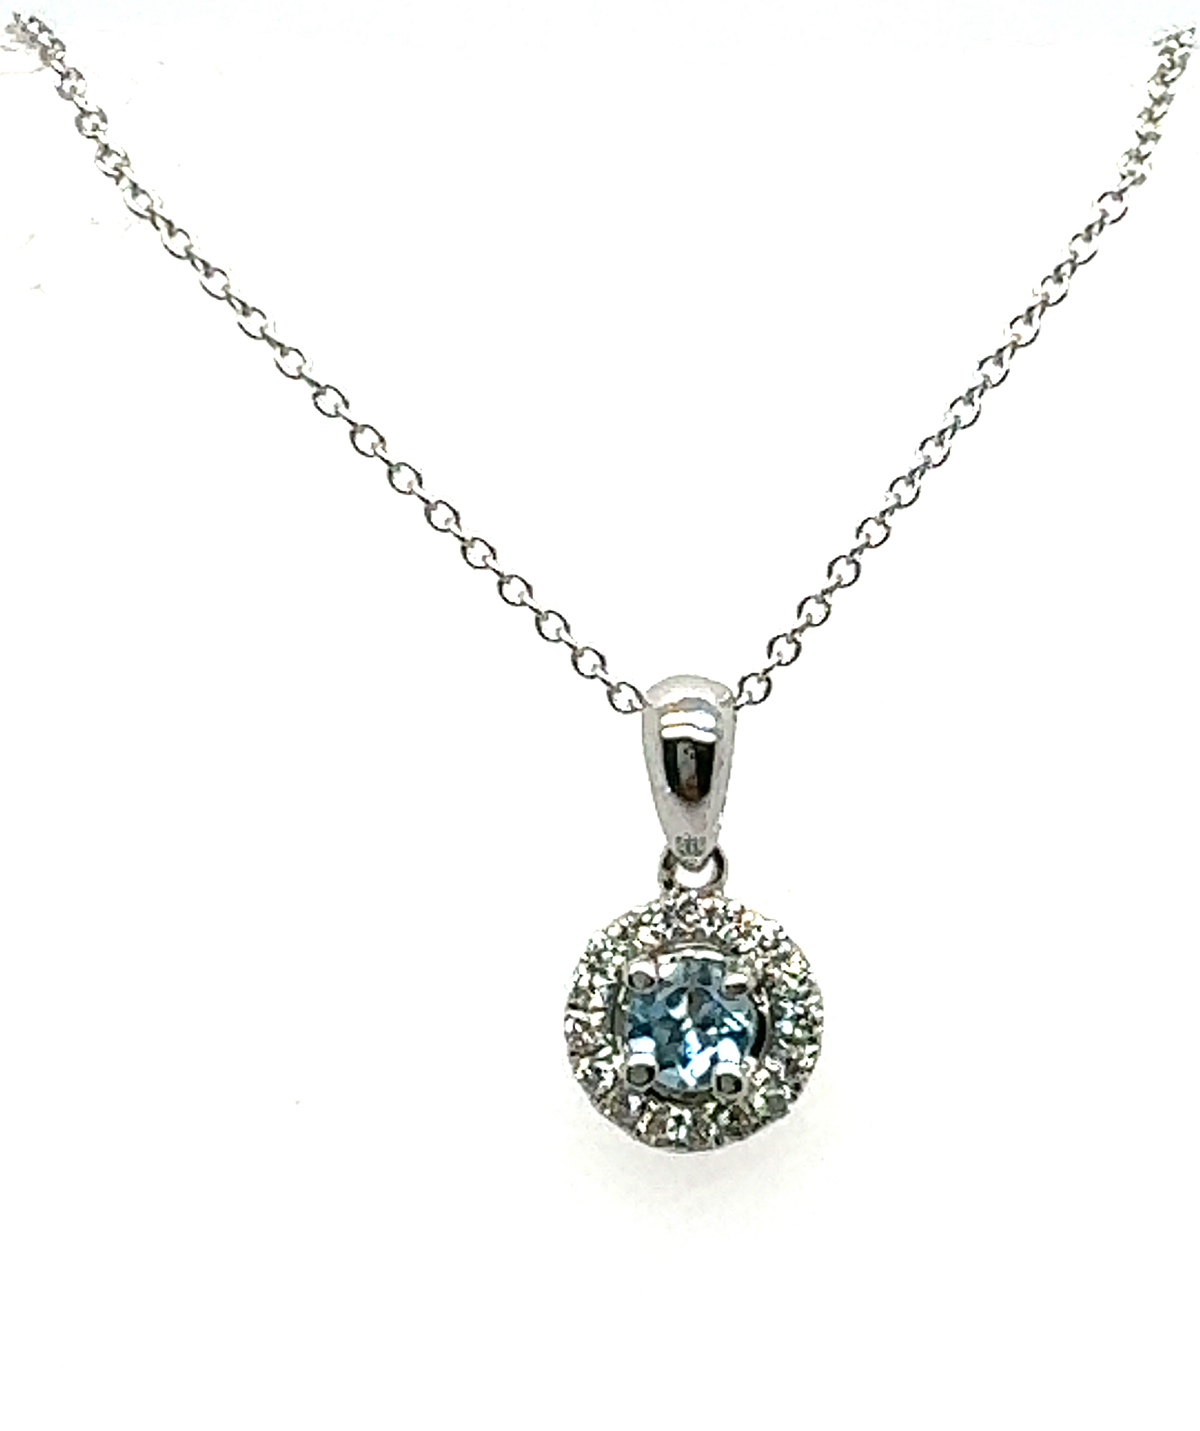 aqua and diamonds necklace chicago